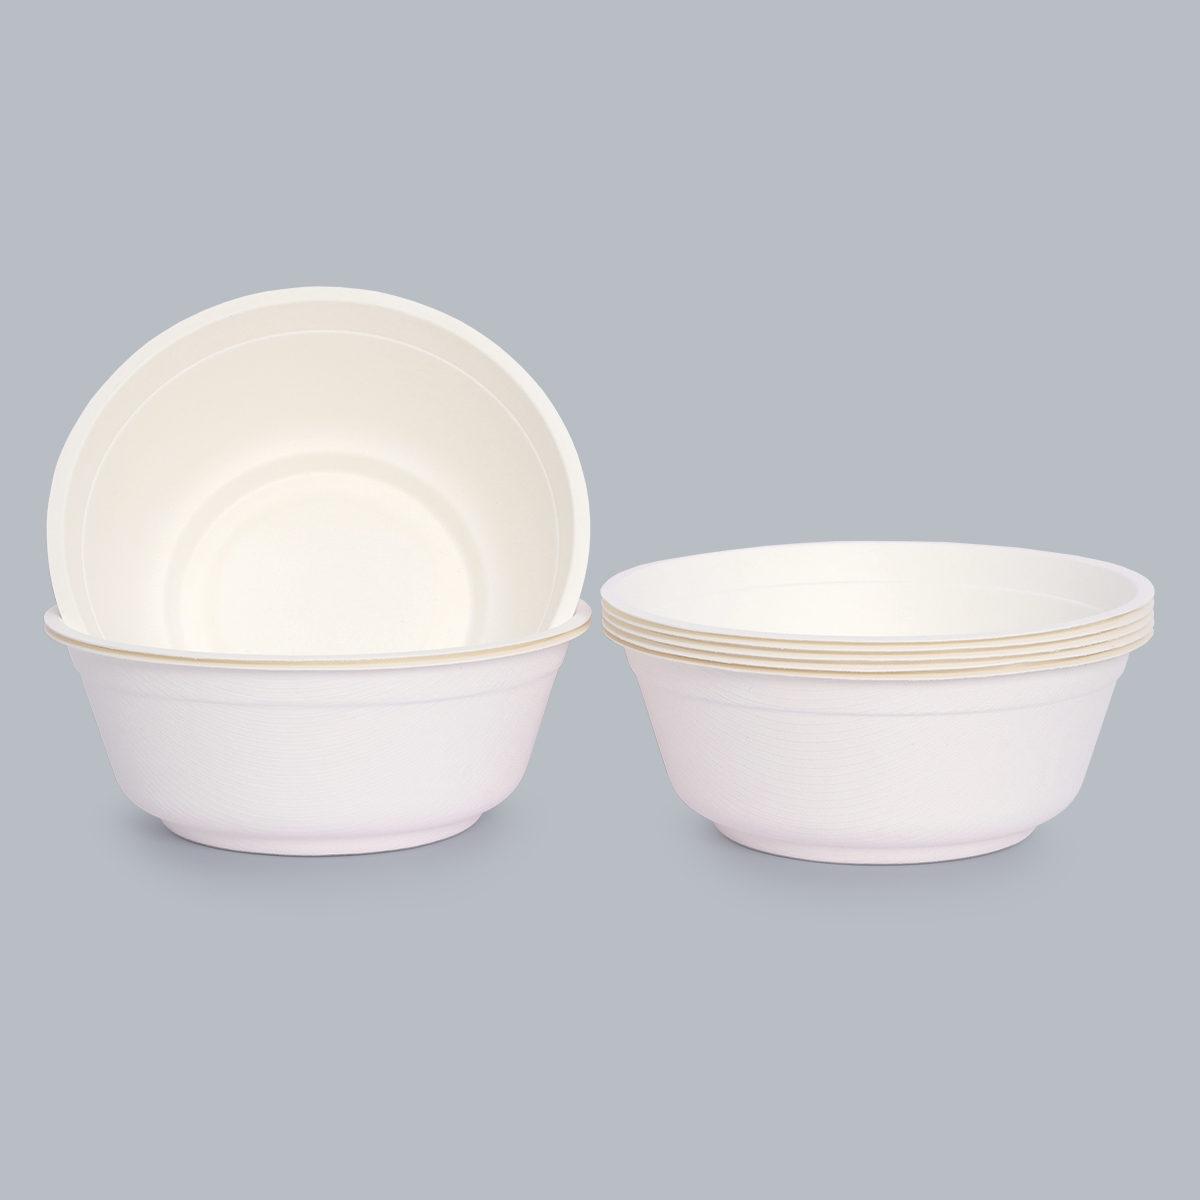 Leak-proof bowls Eco-friendly bowls Biodegradable bowls